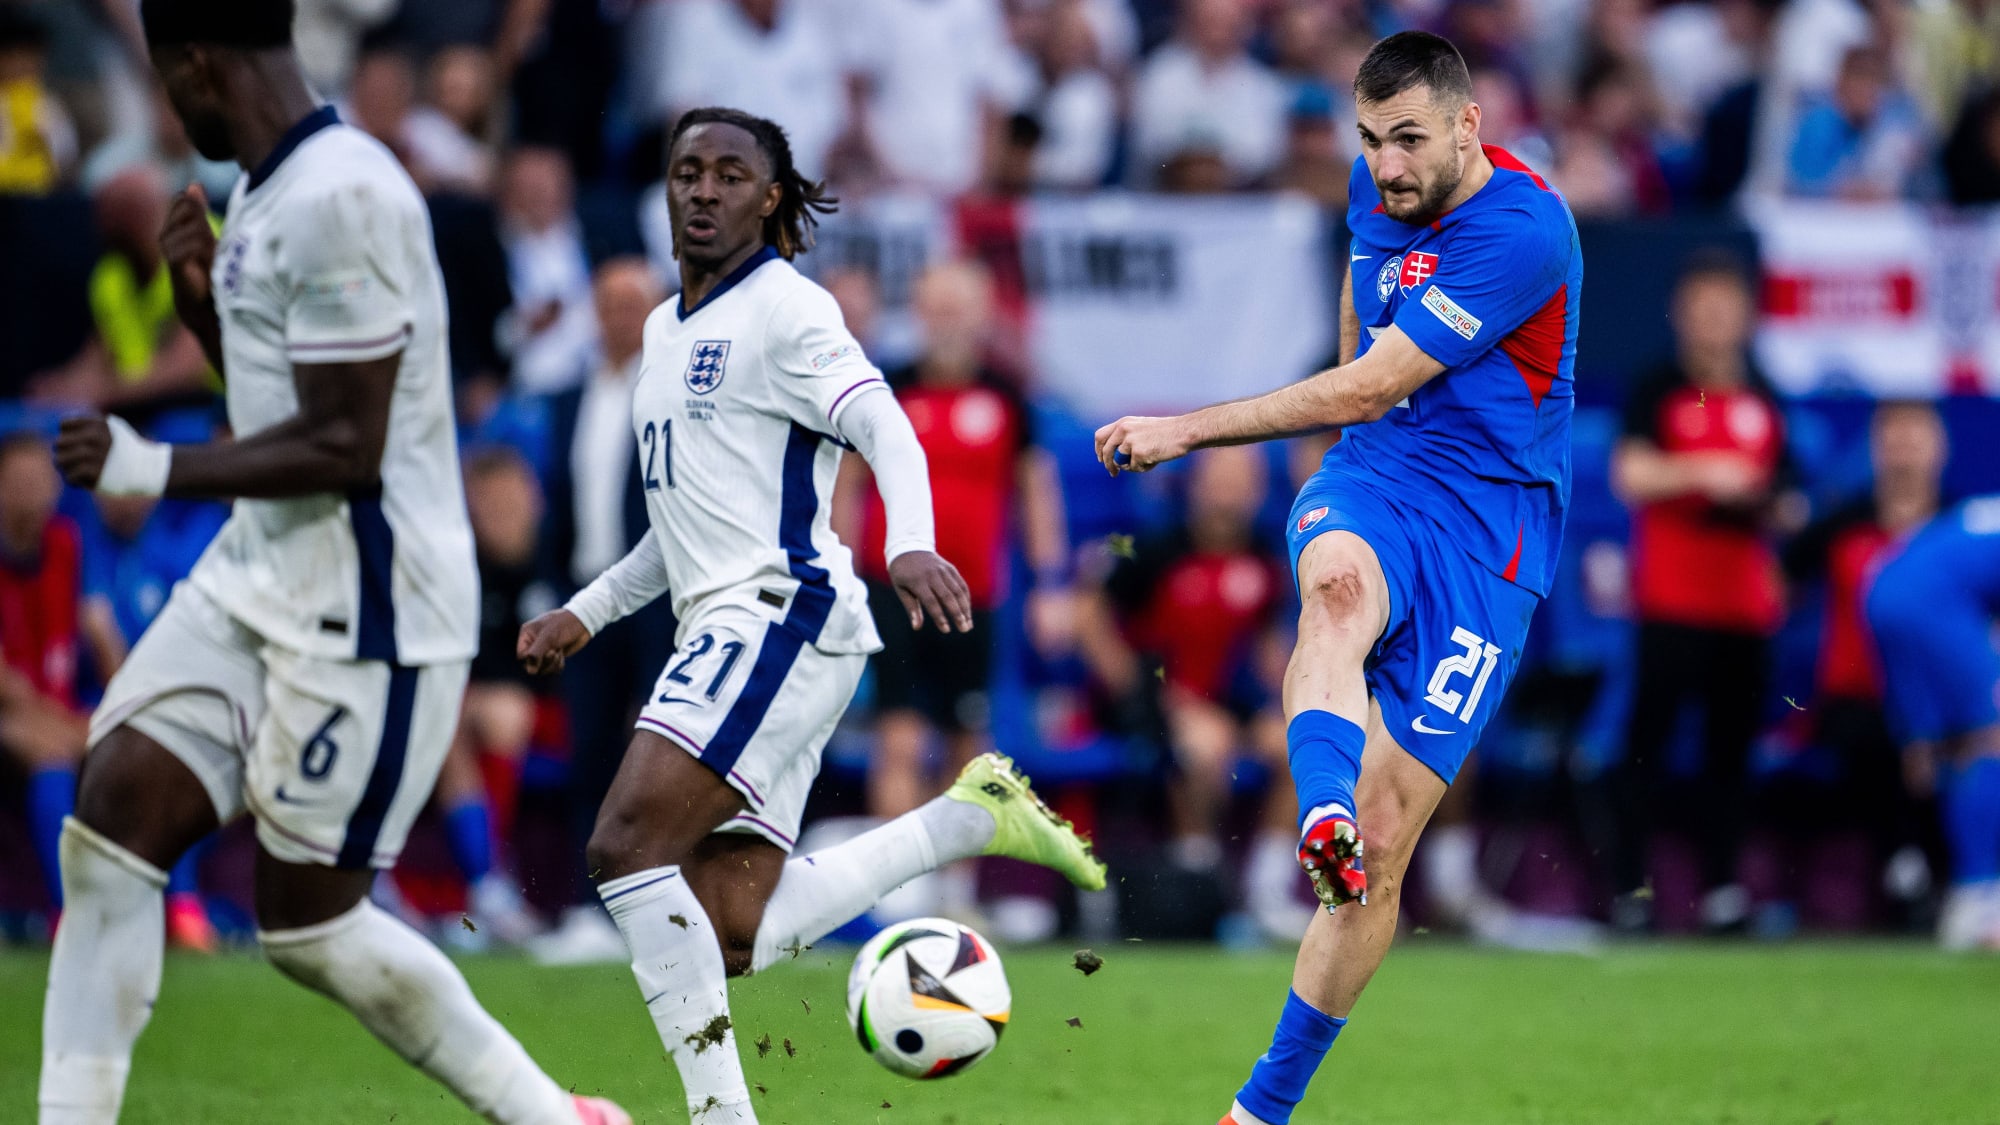 Die Slowakei drückt, doch Englands Defensive hält